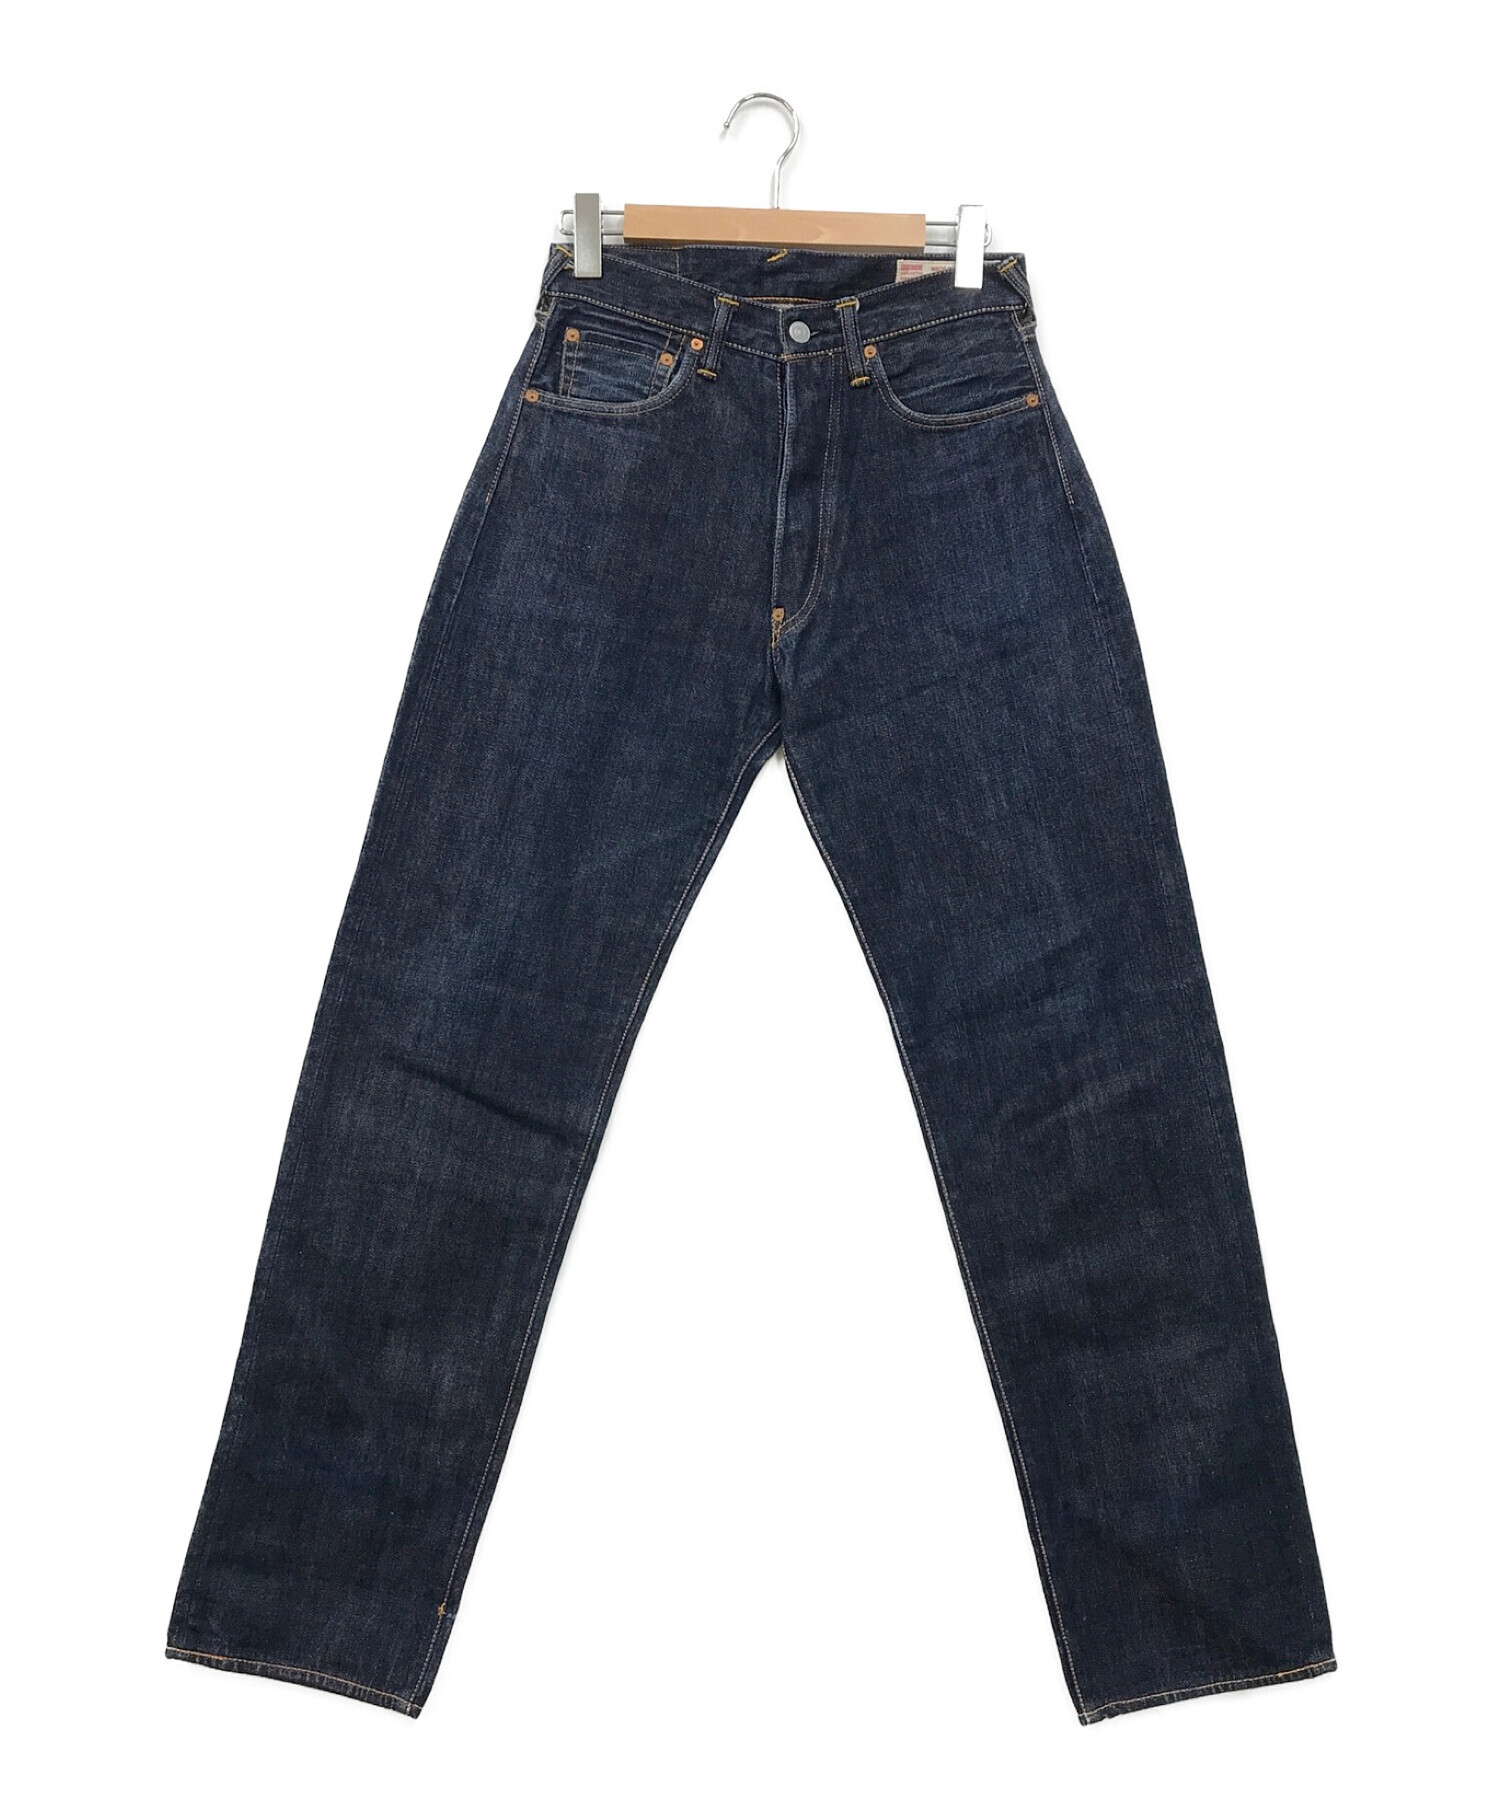 Evisu Jeans (エヴィスジーンズ) 2001ペイントデニムパンツ インディゴ サイズ:29×35